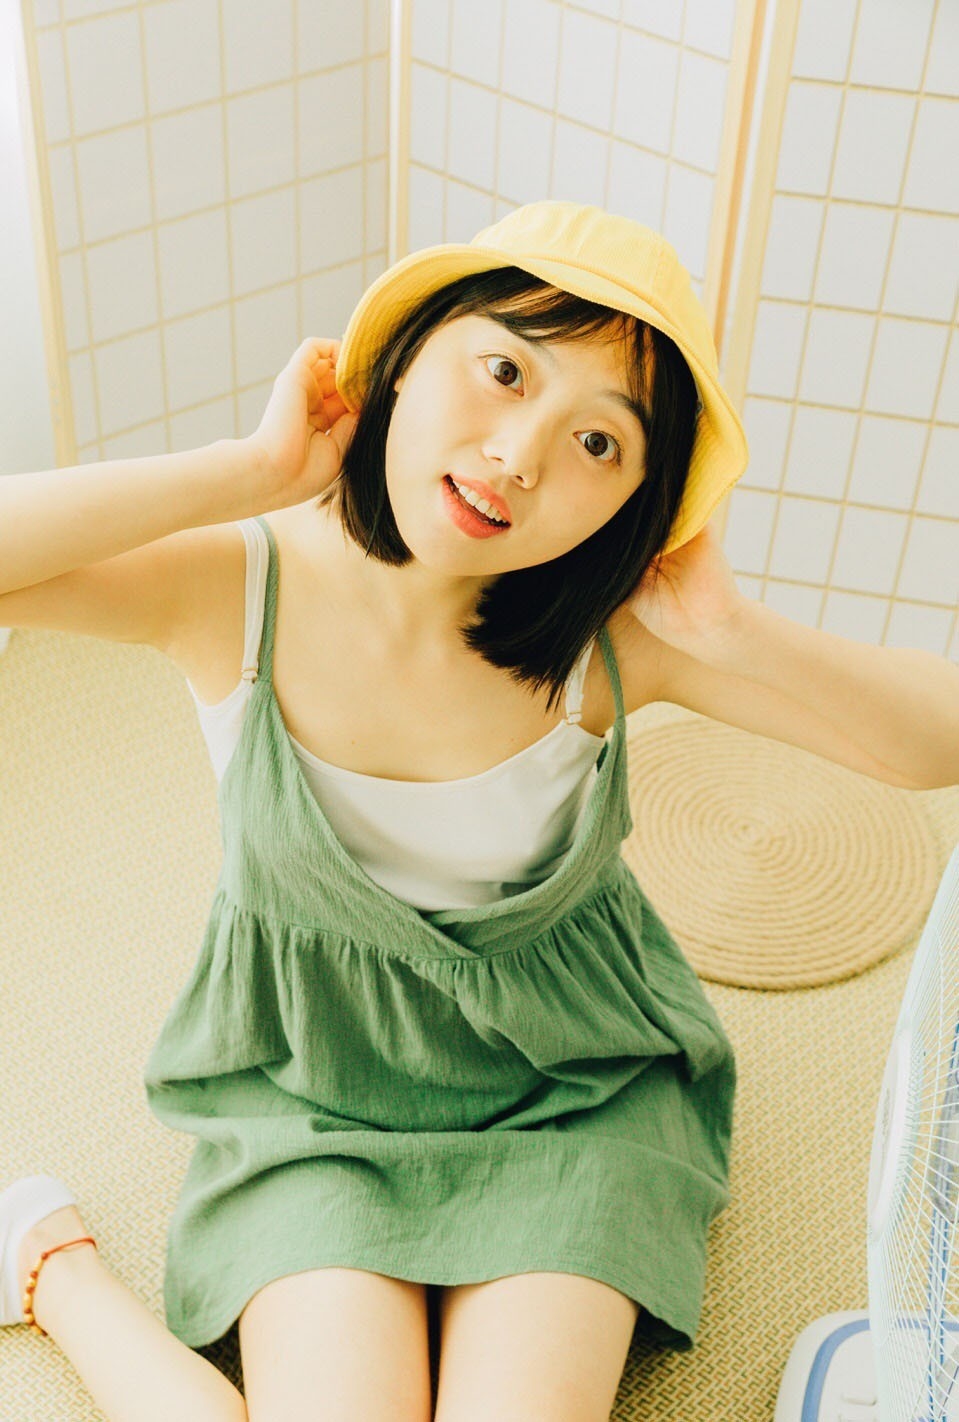 日本美少女搞怪小机灵性感居家生活艺术写真